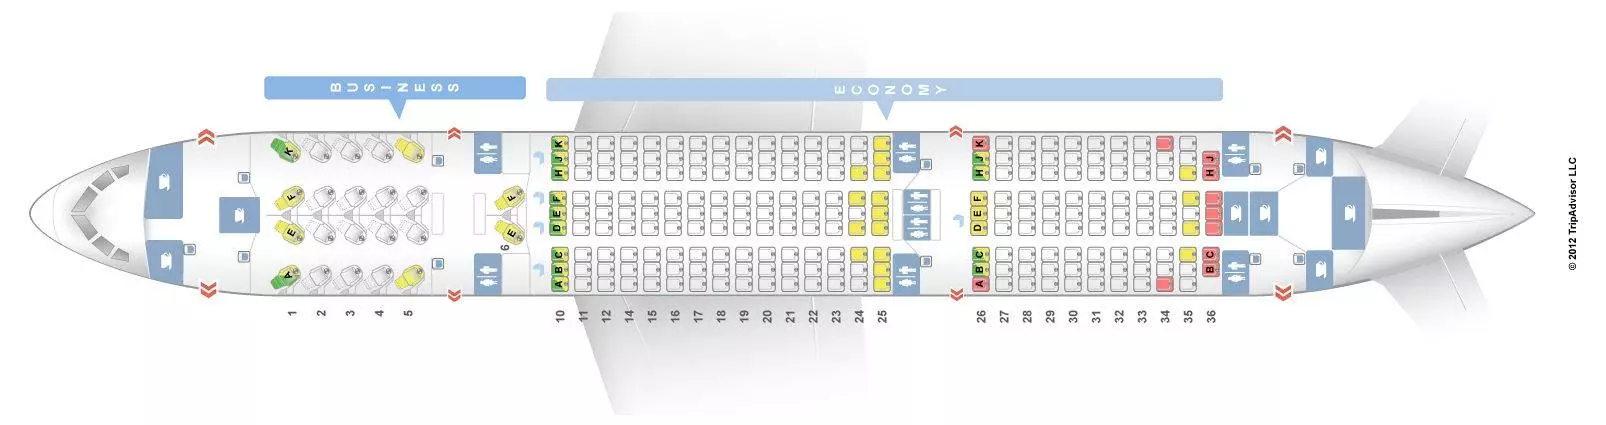 Боинг 787 (dreamliner): схема салона, технические характеристики, стоимость, фото